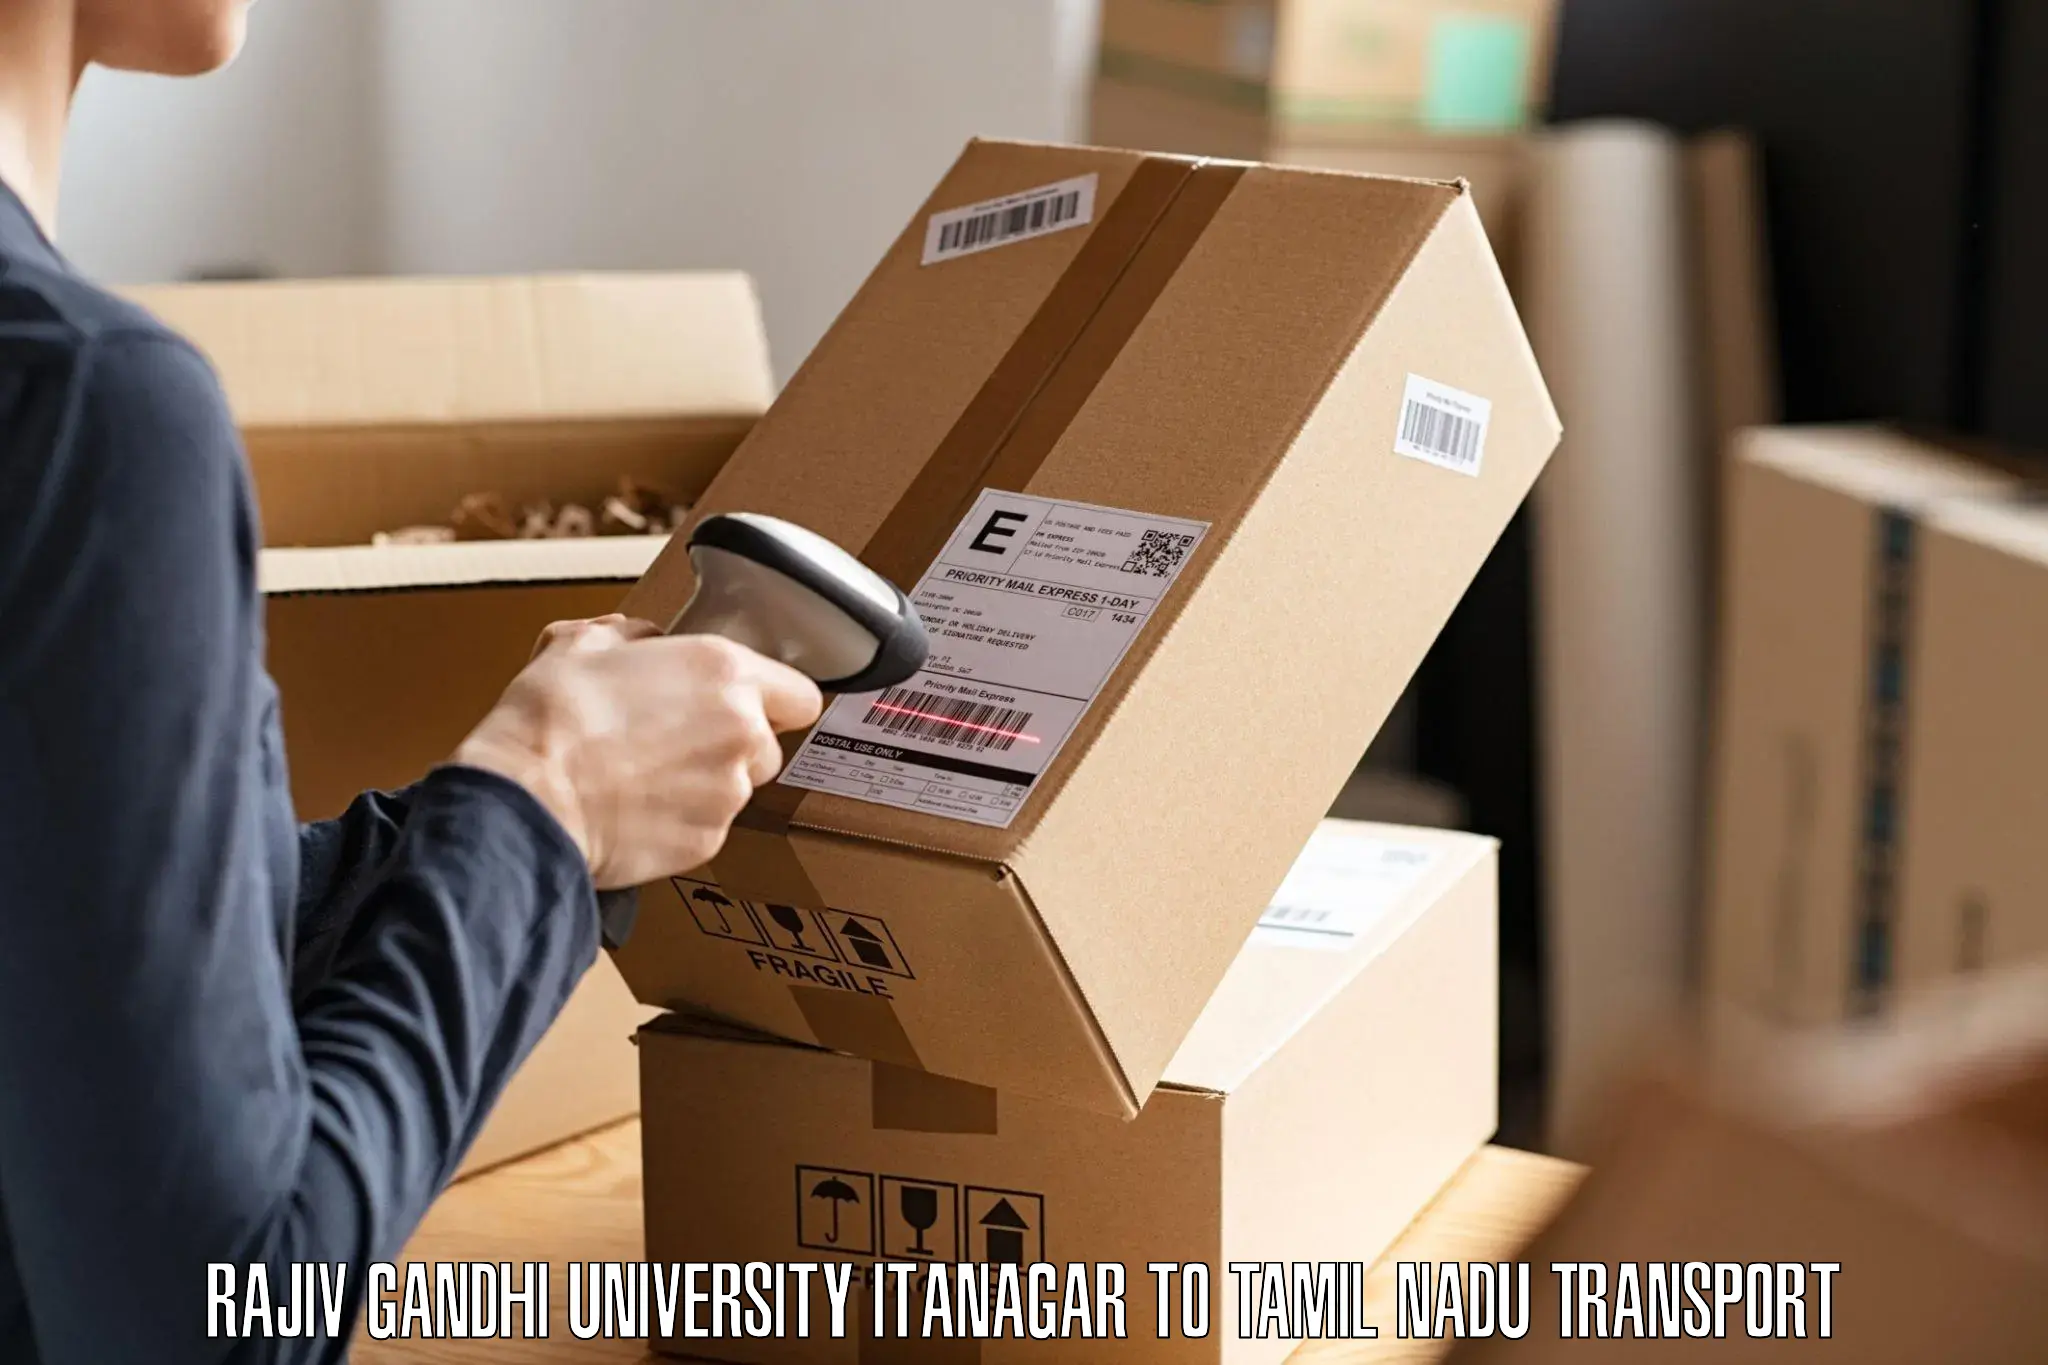 Shipping partner Rajiv Gandhi University Itanagar to Valparai